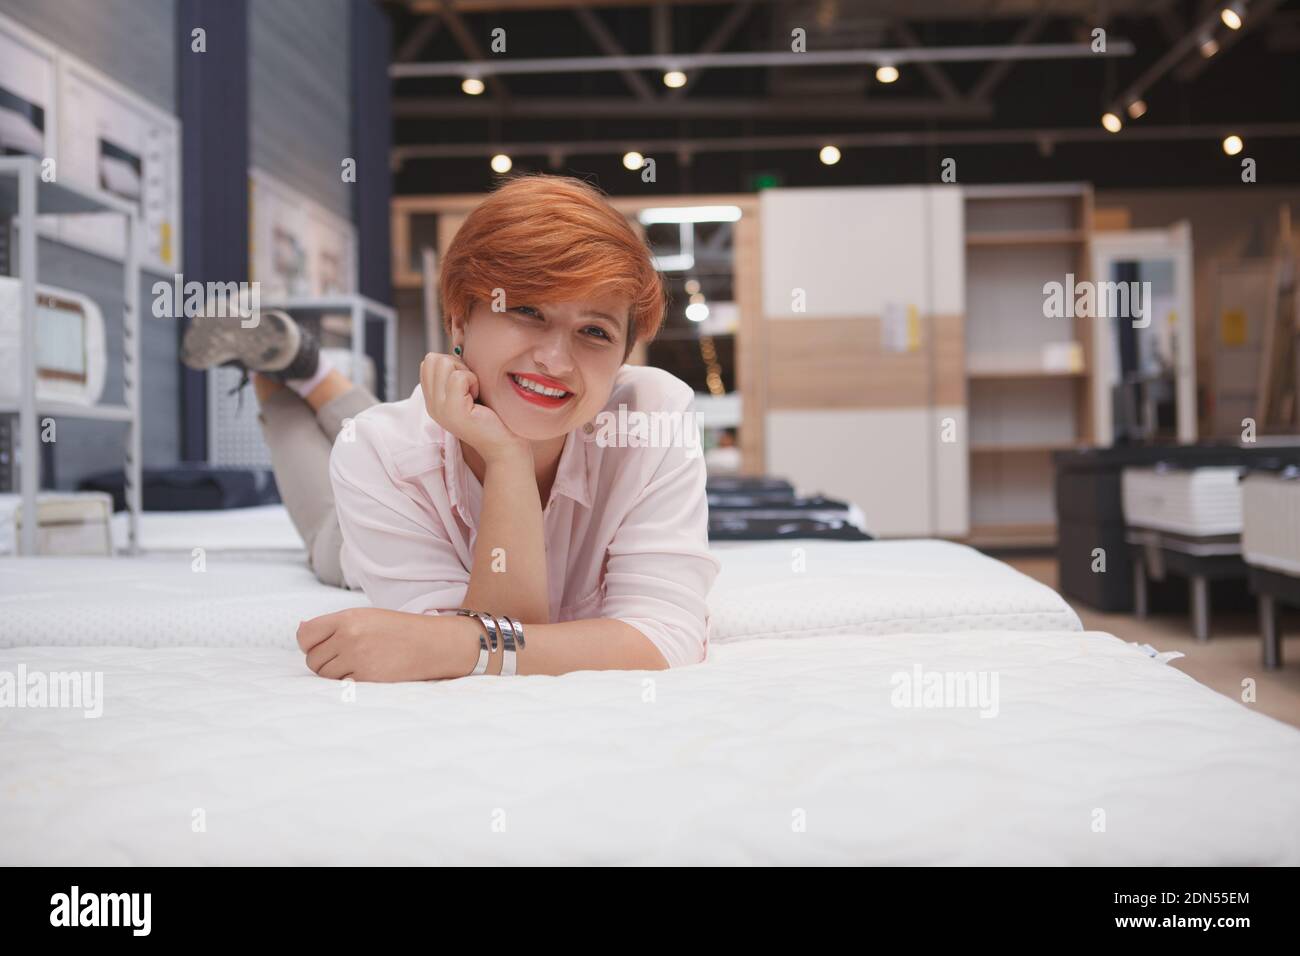 Charmante junge Frau entspannend liegend auf neue orthopädische Bett bei Möbel Supermarkt, kopieren Raum Stockfoto